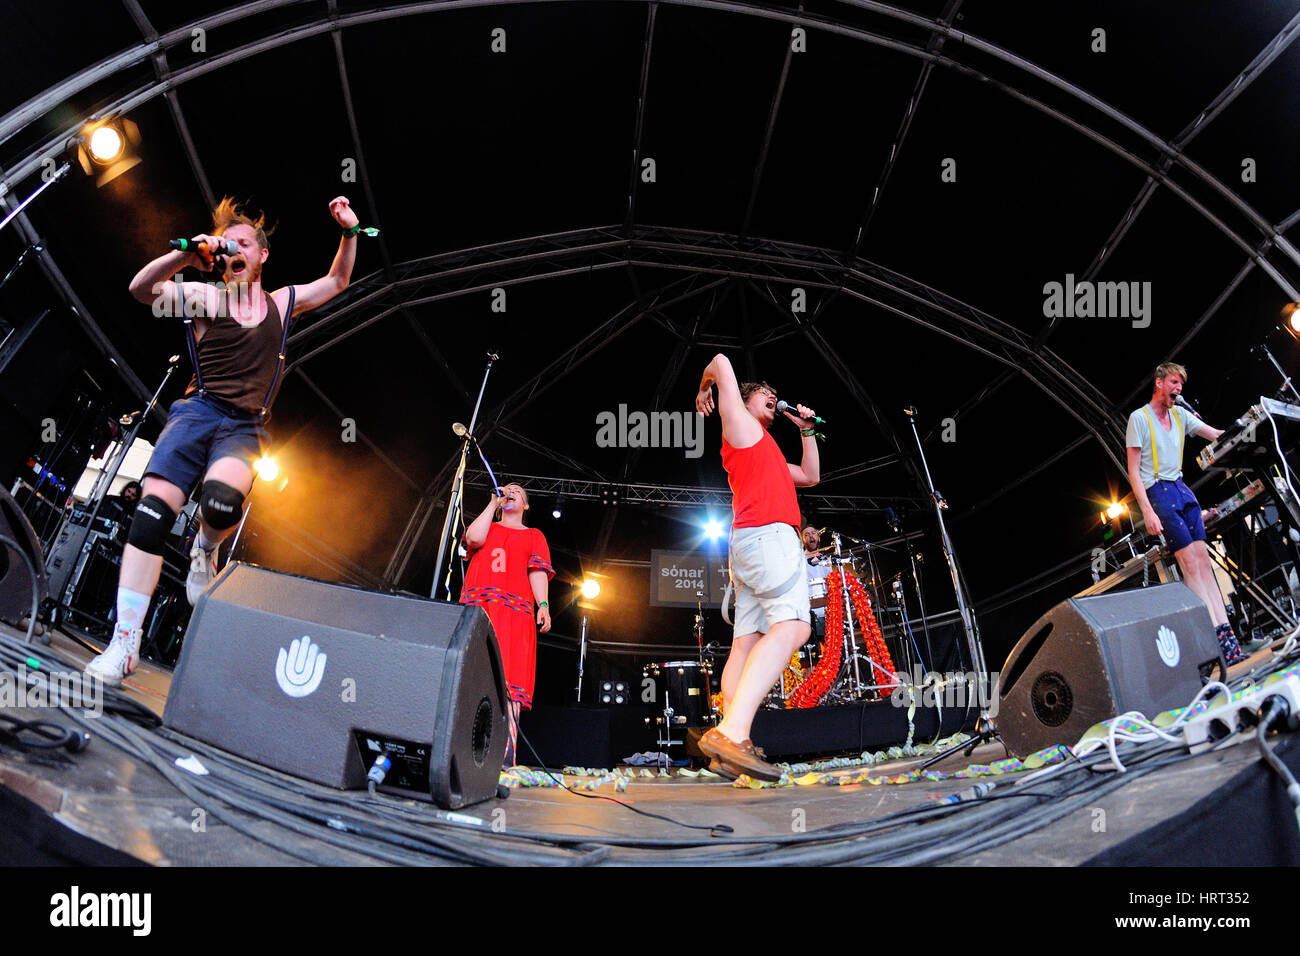 Barcellona - Jun 13: FM Belfast (elettro-pop band) performance al Sonar Festival il 13 giugno 2014 a Barcellona, Spagna. Foto Stock